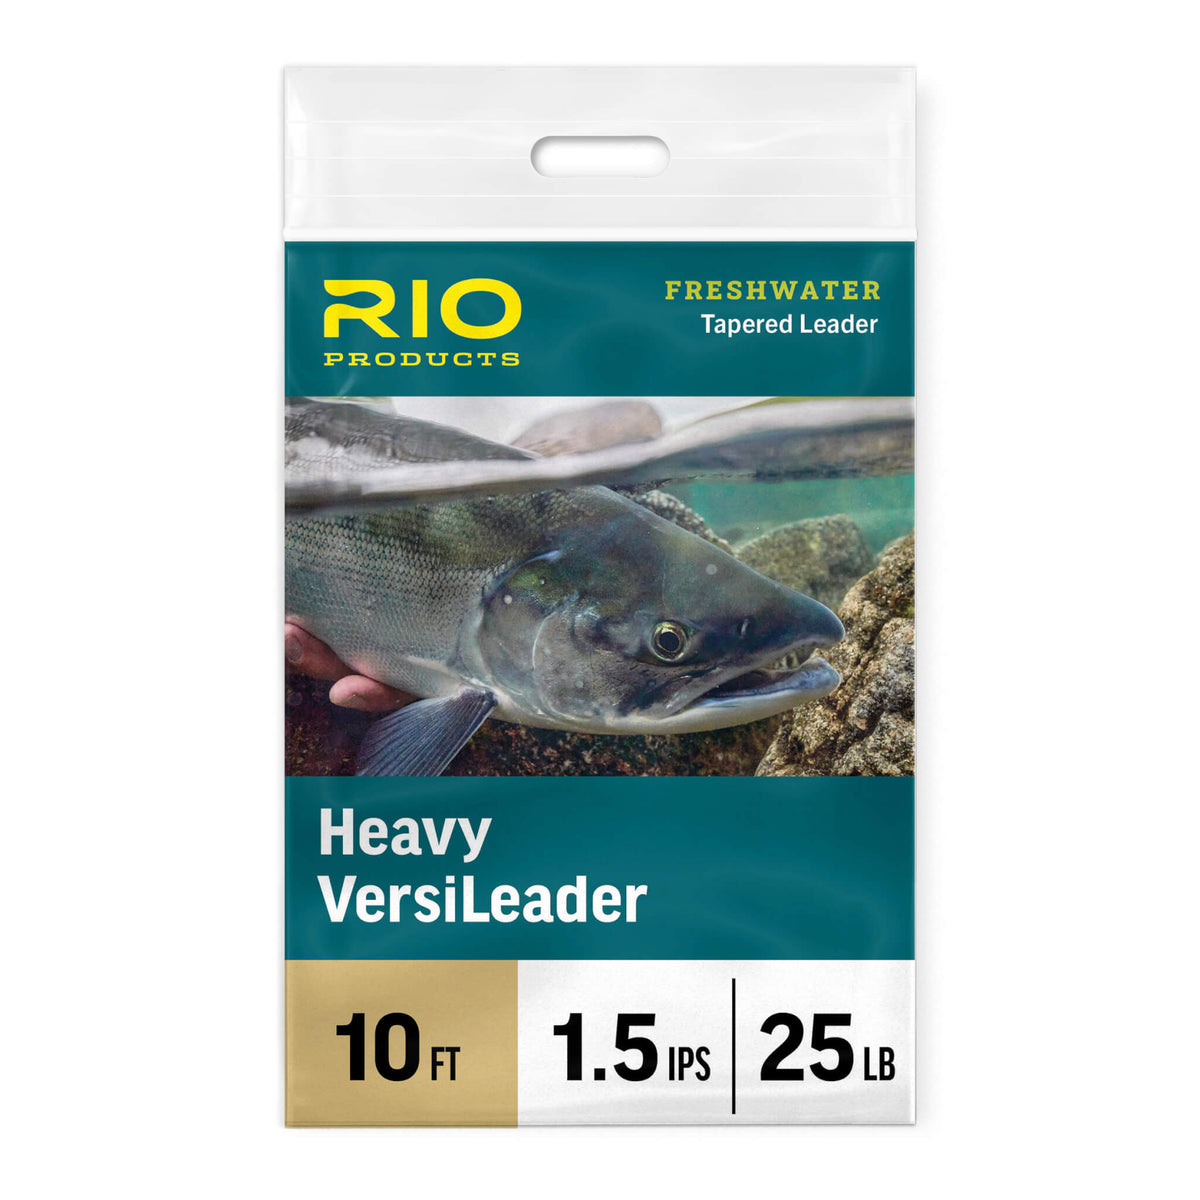 Rio Freshwater Versileader Leaders 20% off